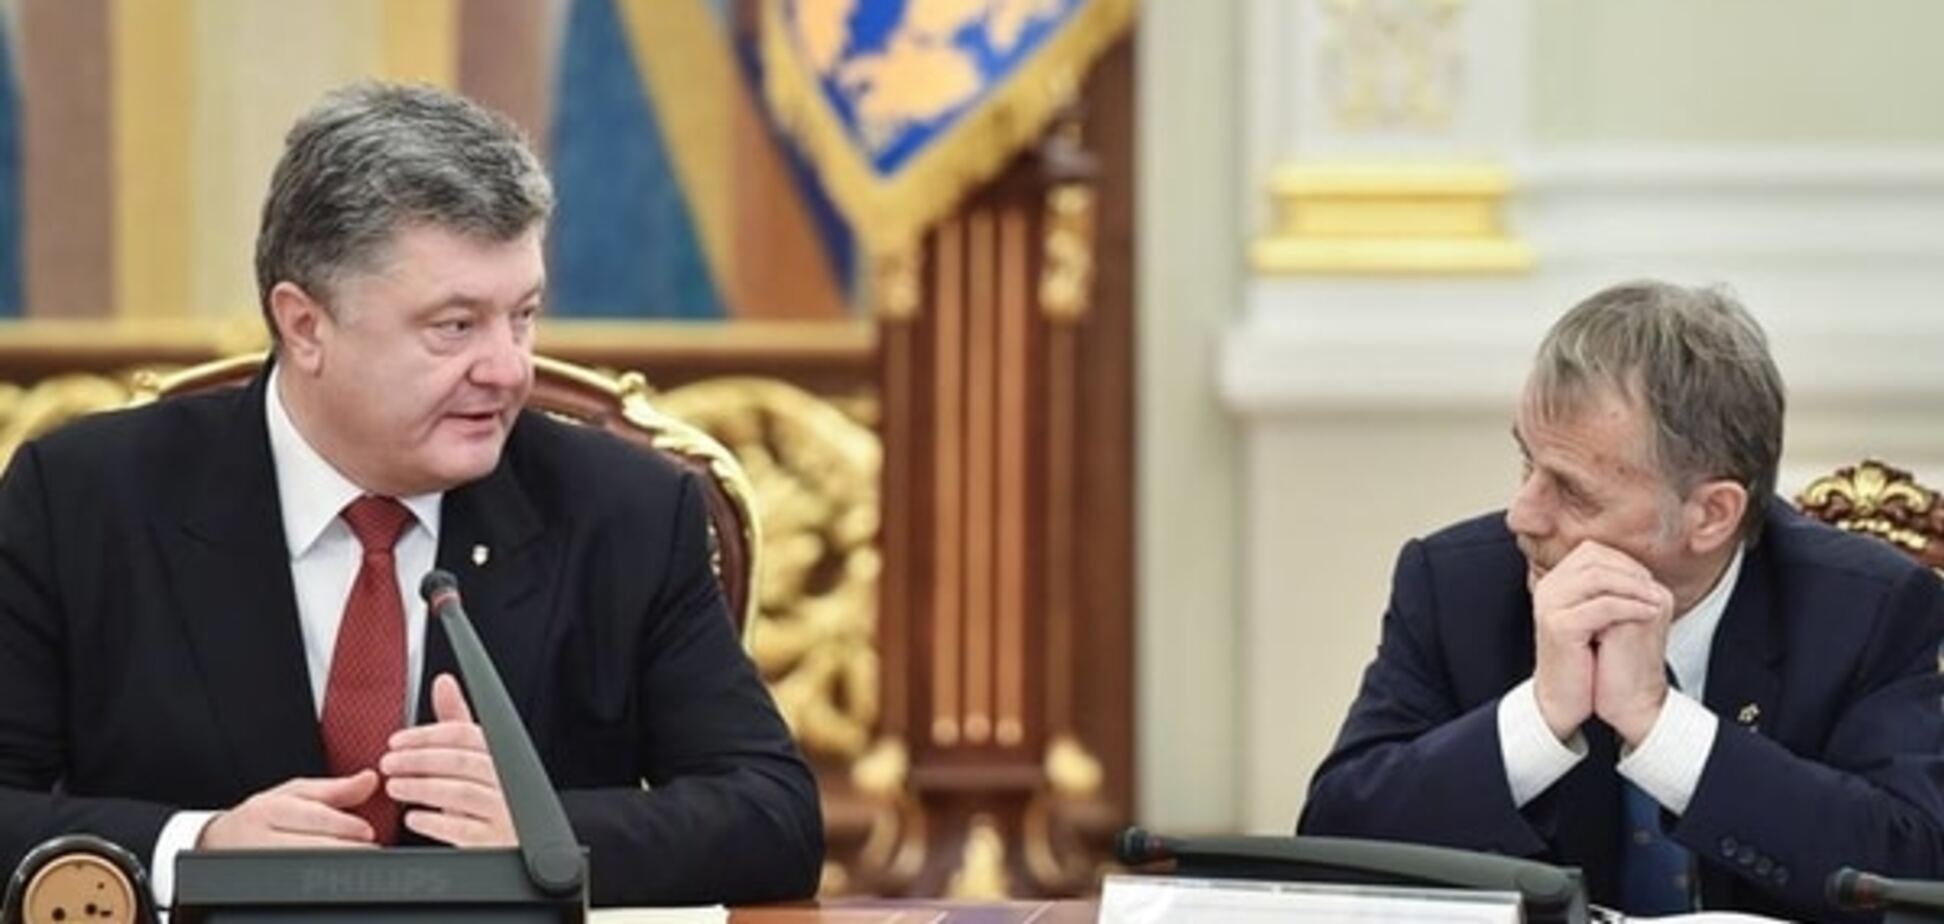 Джемилев получил важную должность 'согласно требованиям ЕС'